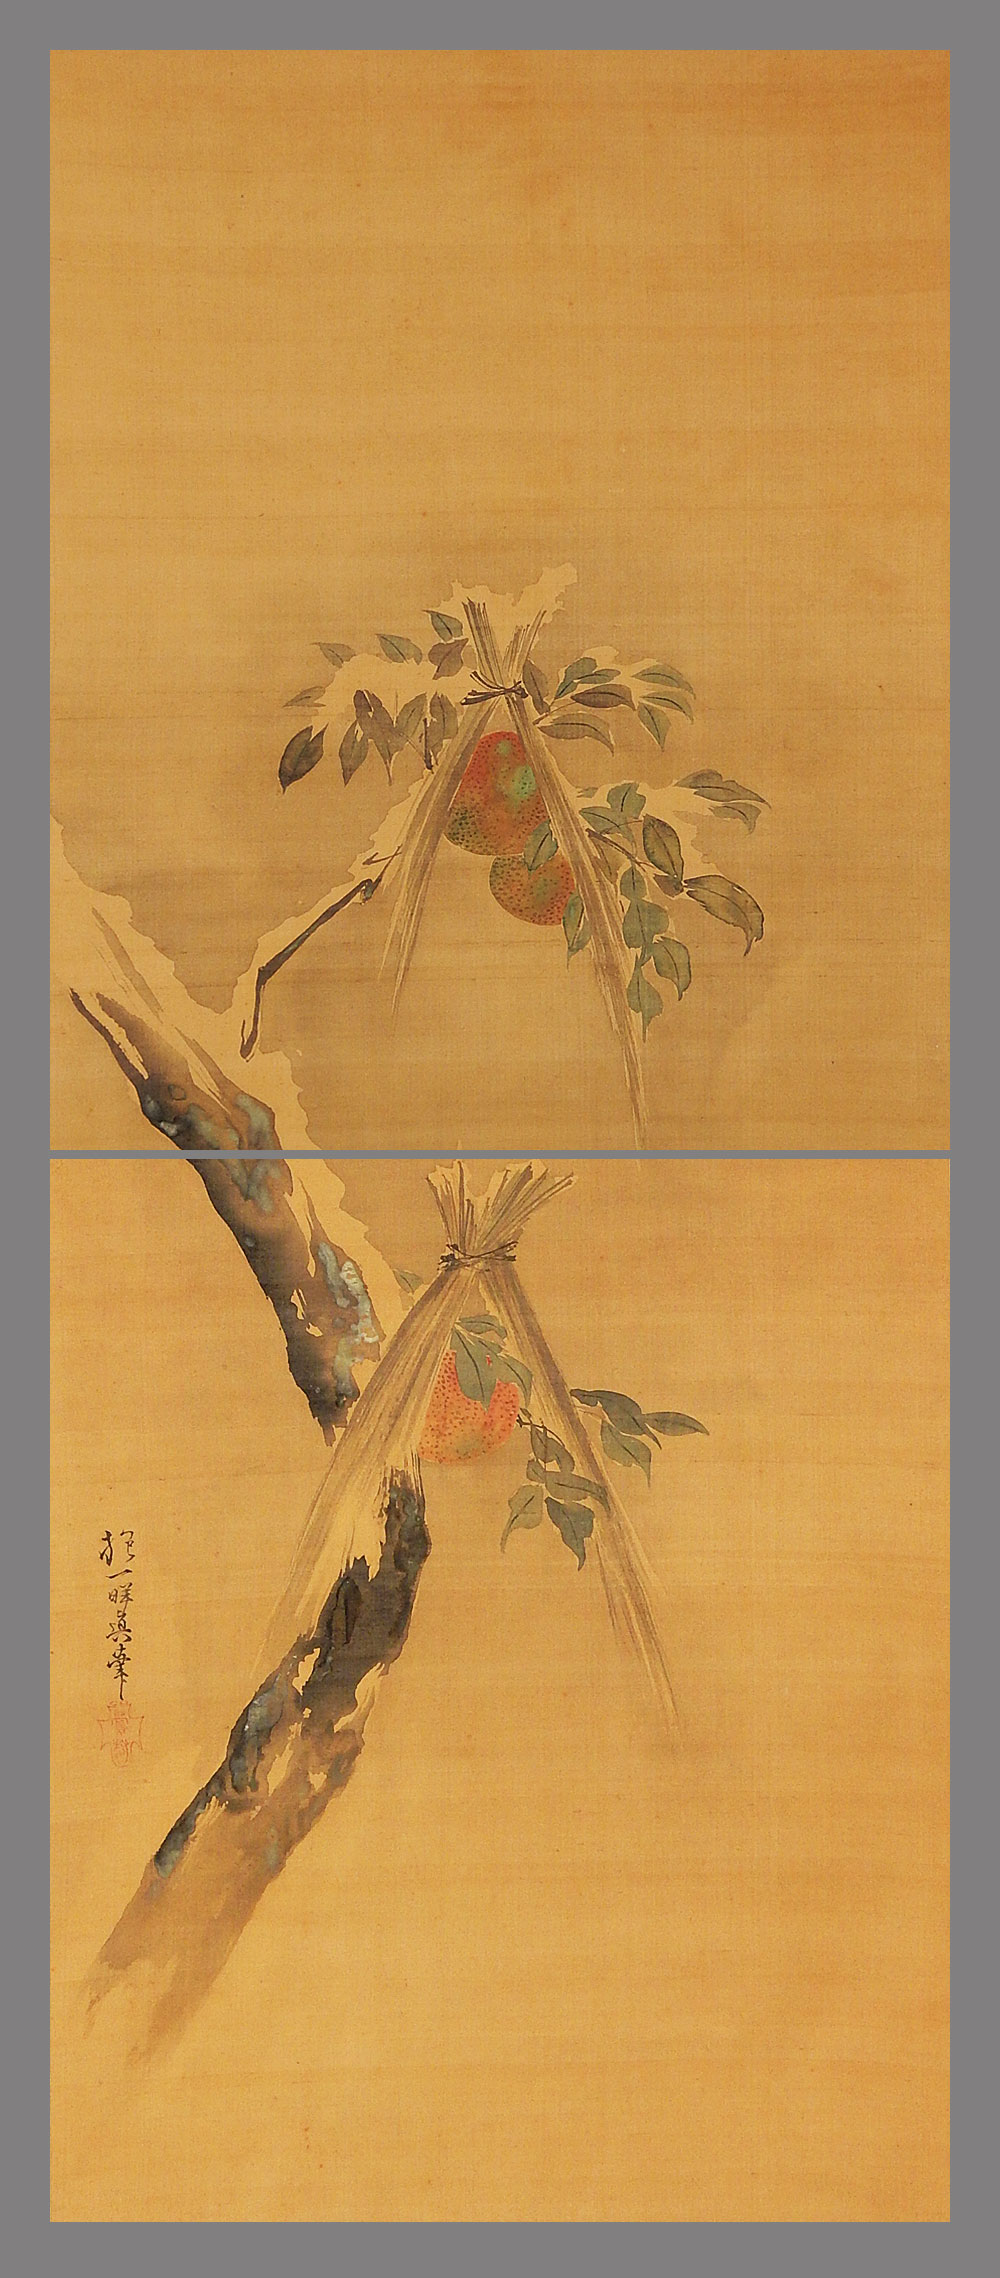 最新版■酒井抱一■寒果実図■江戸時代の絵師/俳人■肉筆■掛軸■掛け軸■日本画■ 花鳥、鳥獣